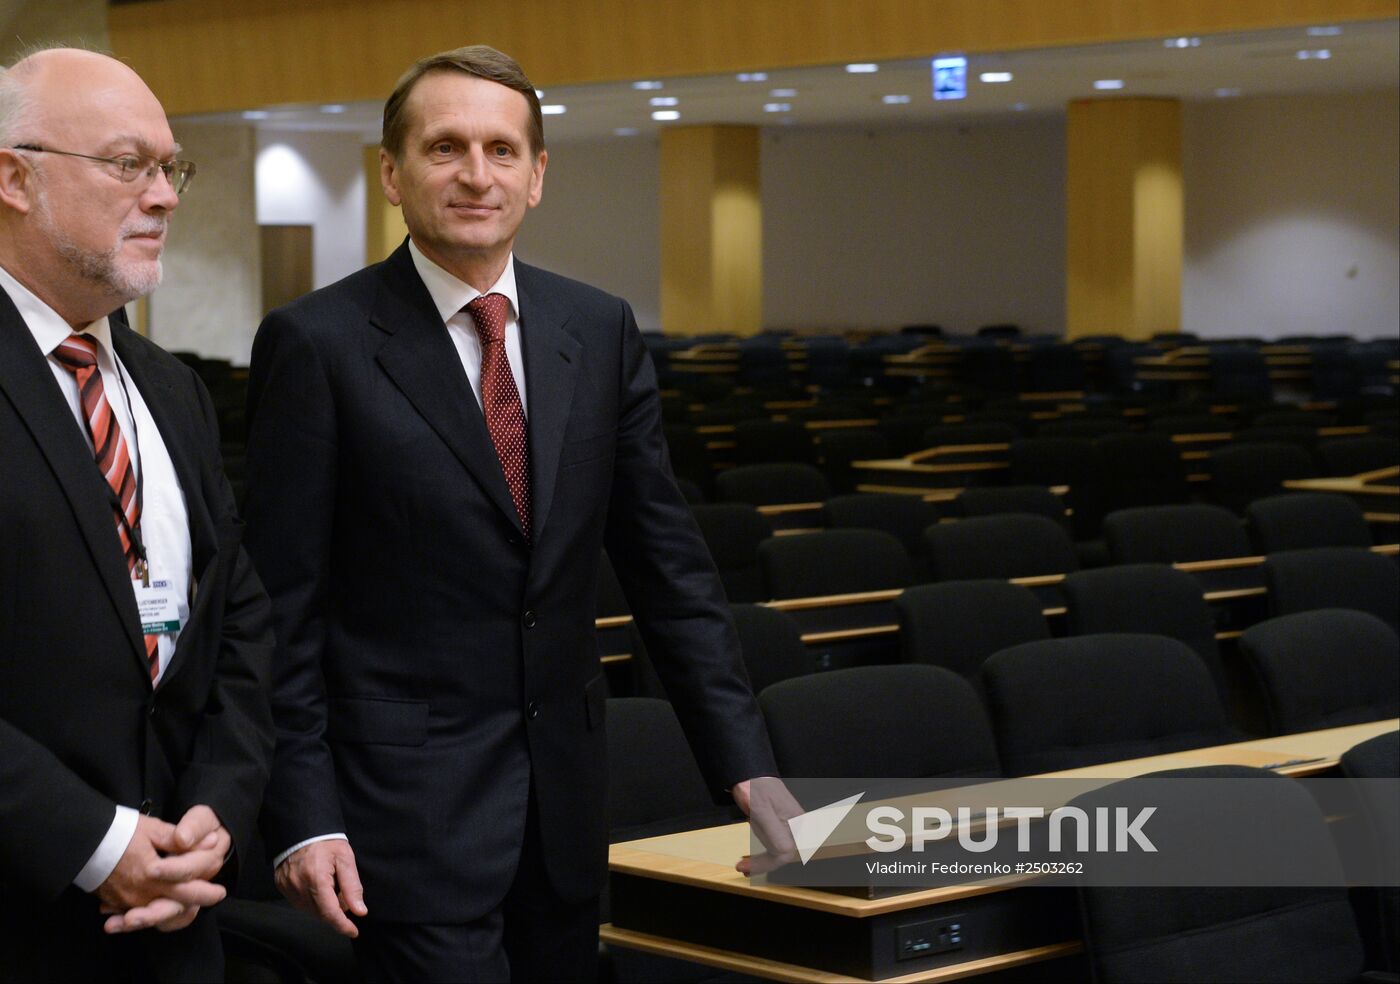 State Duma Speaker Sergei Naryshkin's visit to Switzerland